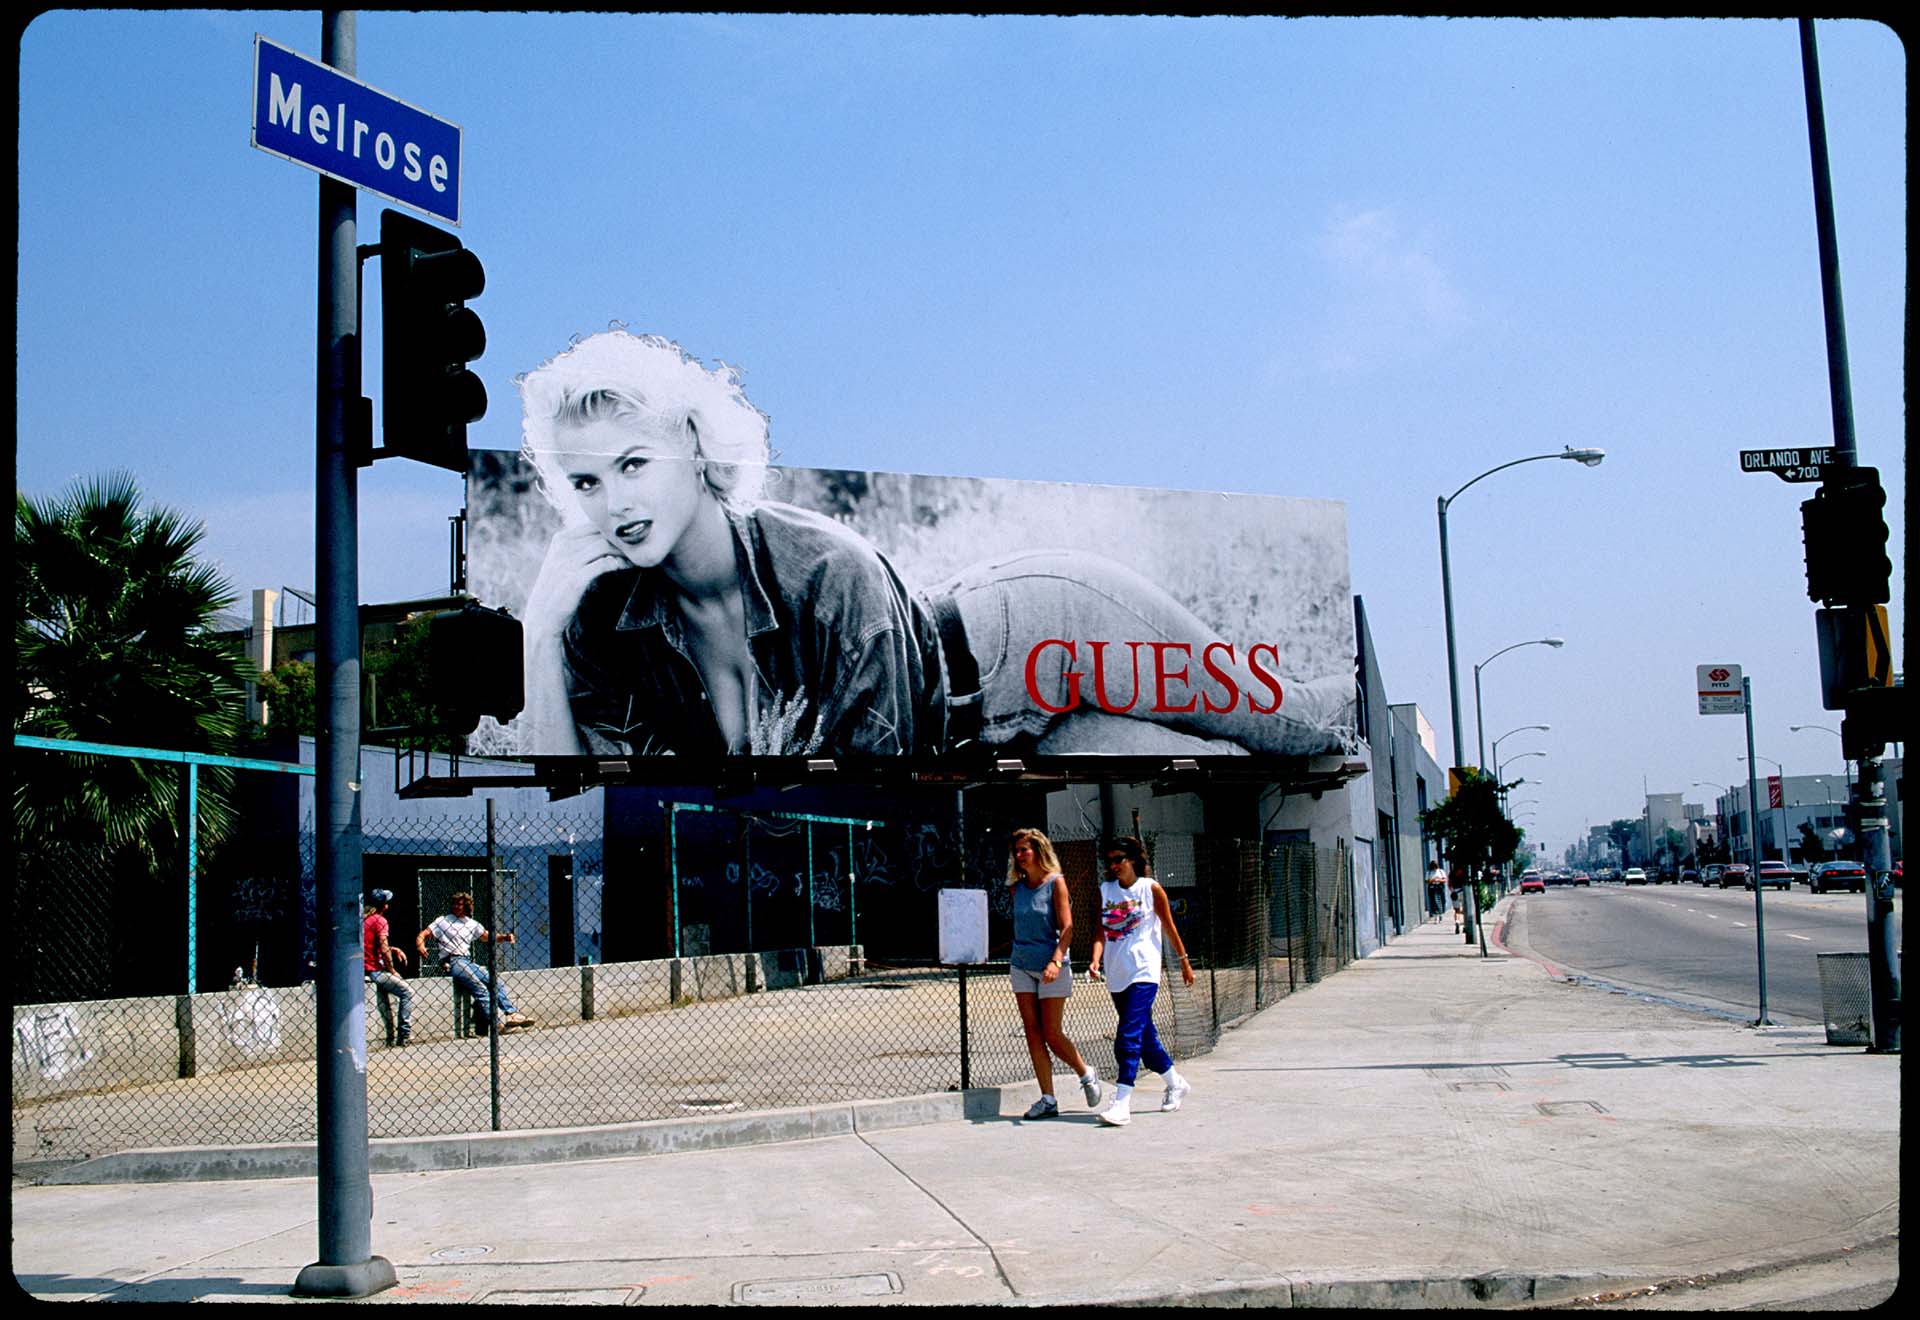 Las fotos en Playboy llevó a que el cofundador de Guess, Paul Marciano, le ofreciera un suculento contrato para sustituir a Claudia Schiffer en una campaña publicitaria de jeans (Photo by Paul Harris/Getty Images)